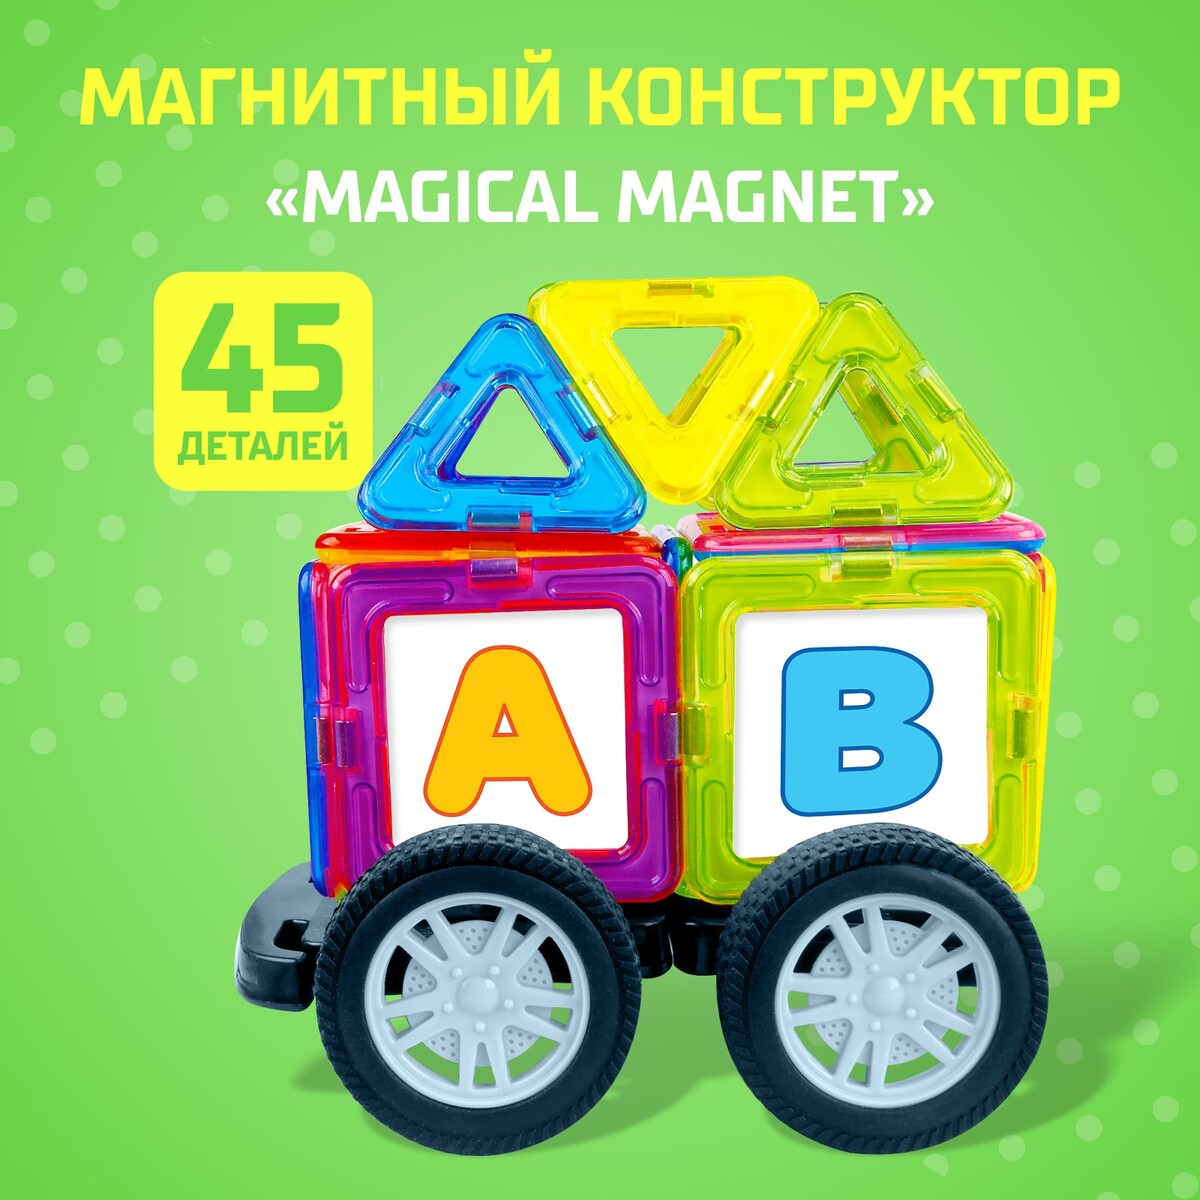 Магнитный конструктор magical magnet, 45 деталей, детали матовые конструктор теропром мини качели 33 детали 1552111